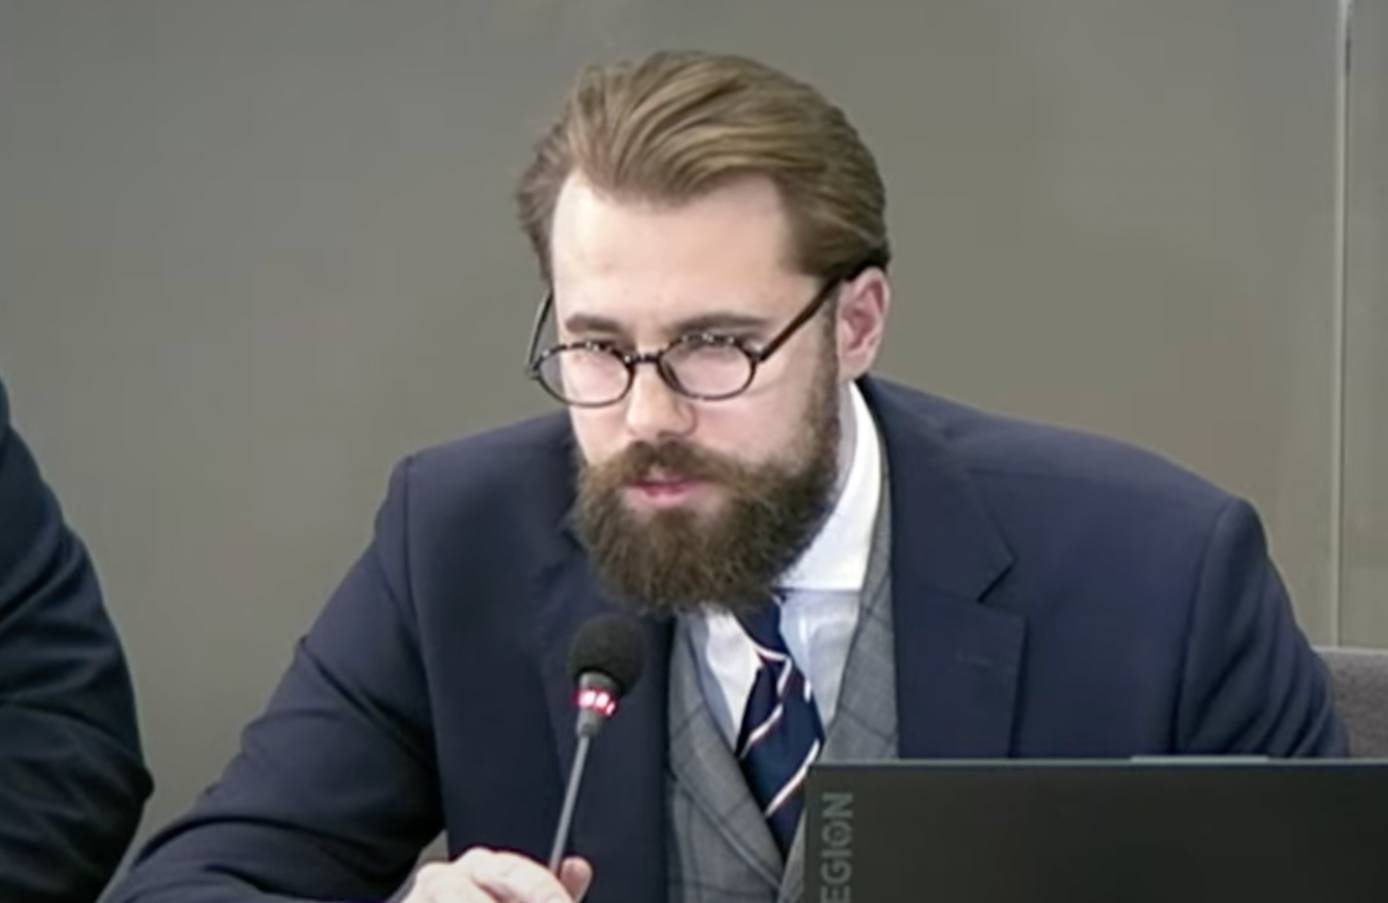 Jakub Osajda podczas przesłuchania przed komisją ds. afery wizowej. Ma brodę i ciemne, okrągłe oprawki okularów